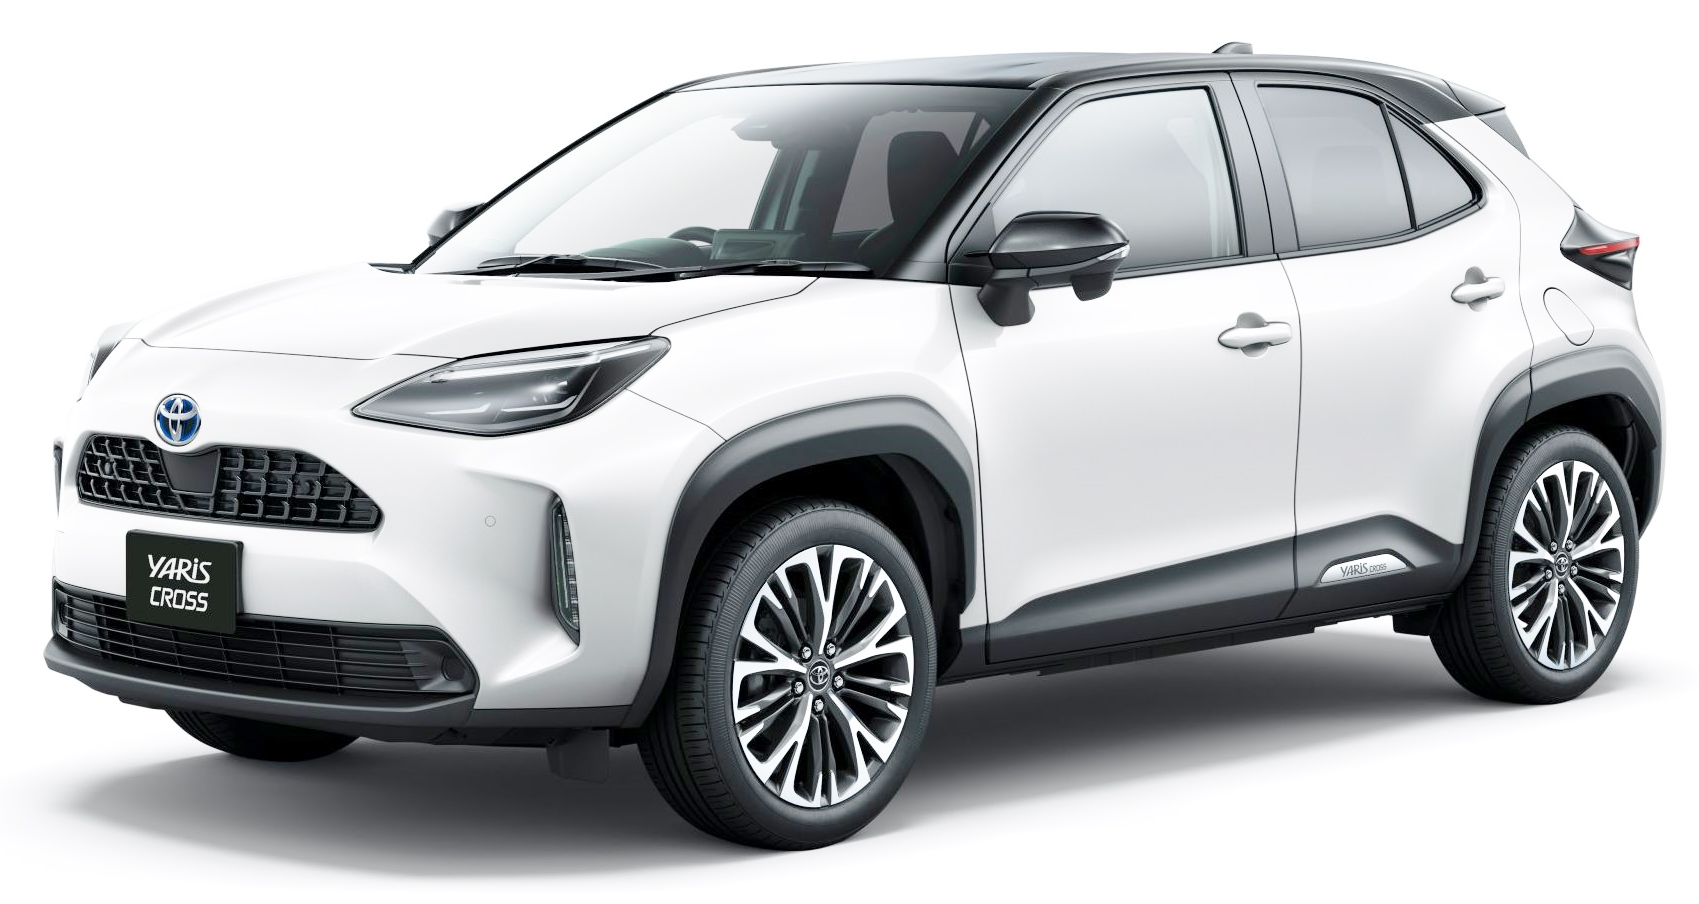 Chi tiết SUV cỡ nhỏ Toyota Yaris Cross 2021 giá khởi điểm 395 triệu đồng tại Nhật Bản